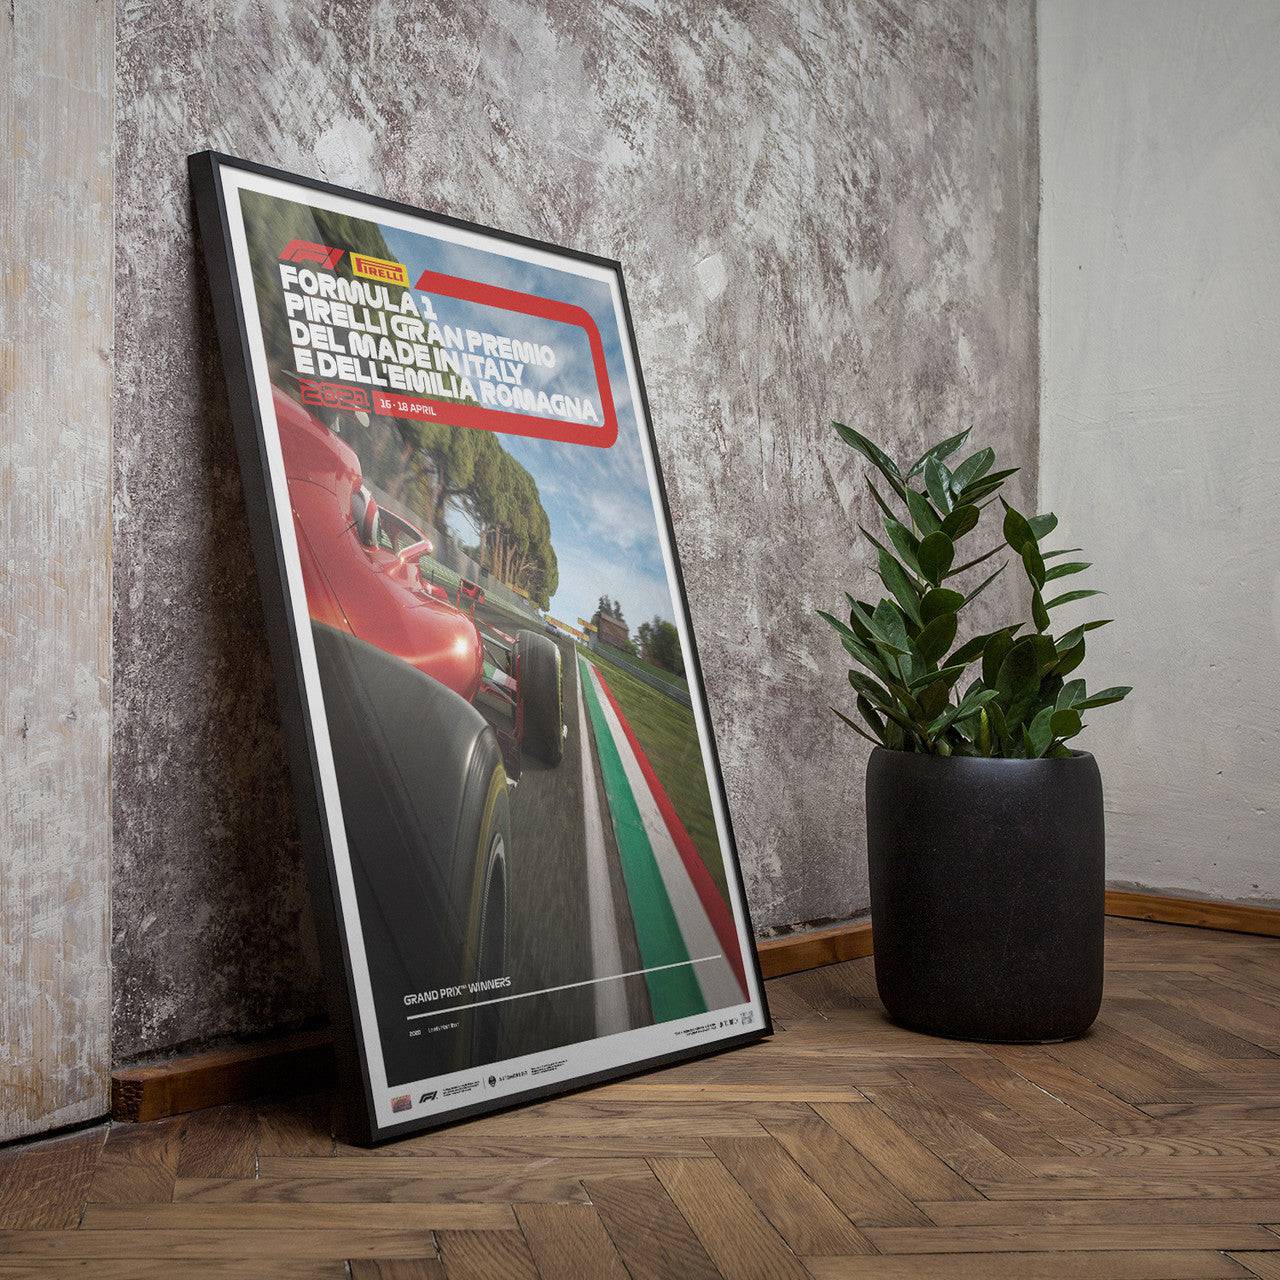 Formula 1® Pirelli Gran Premio dell’Emilia Romagna 2021 | Limited Edition